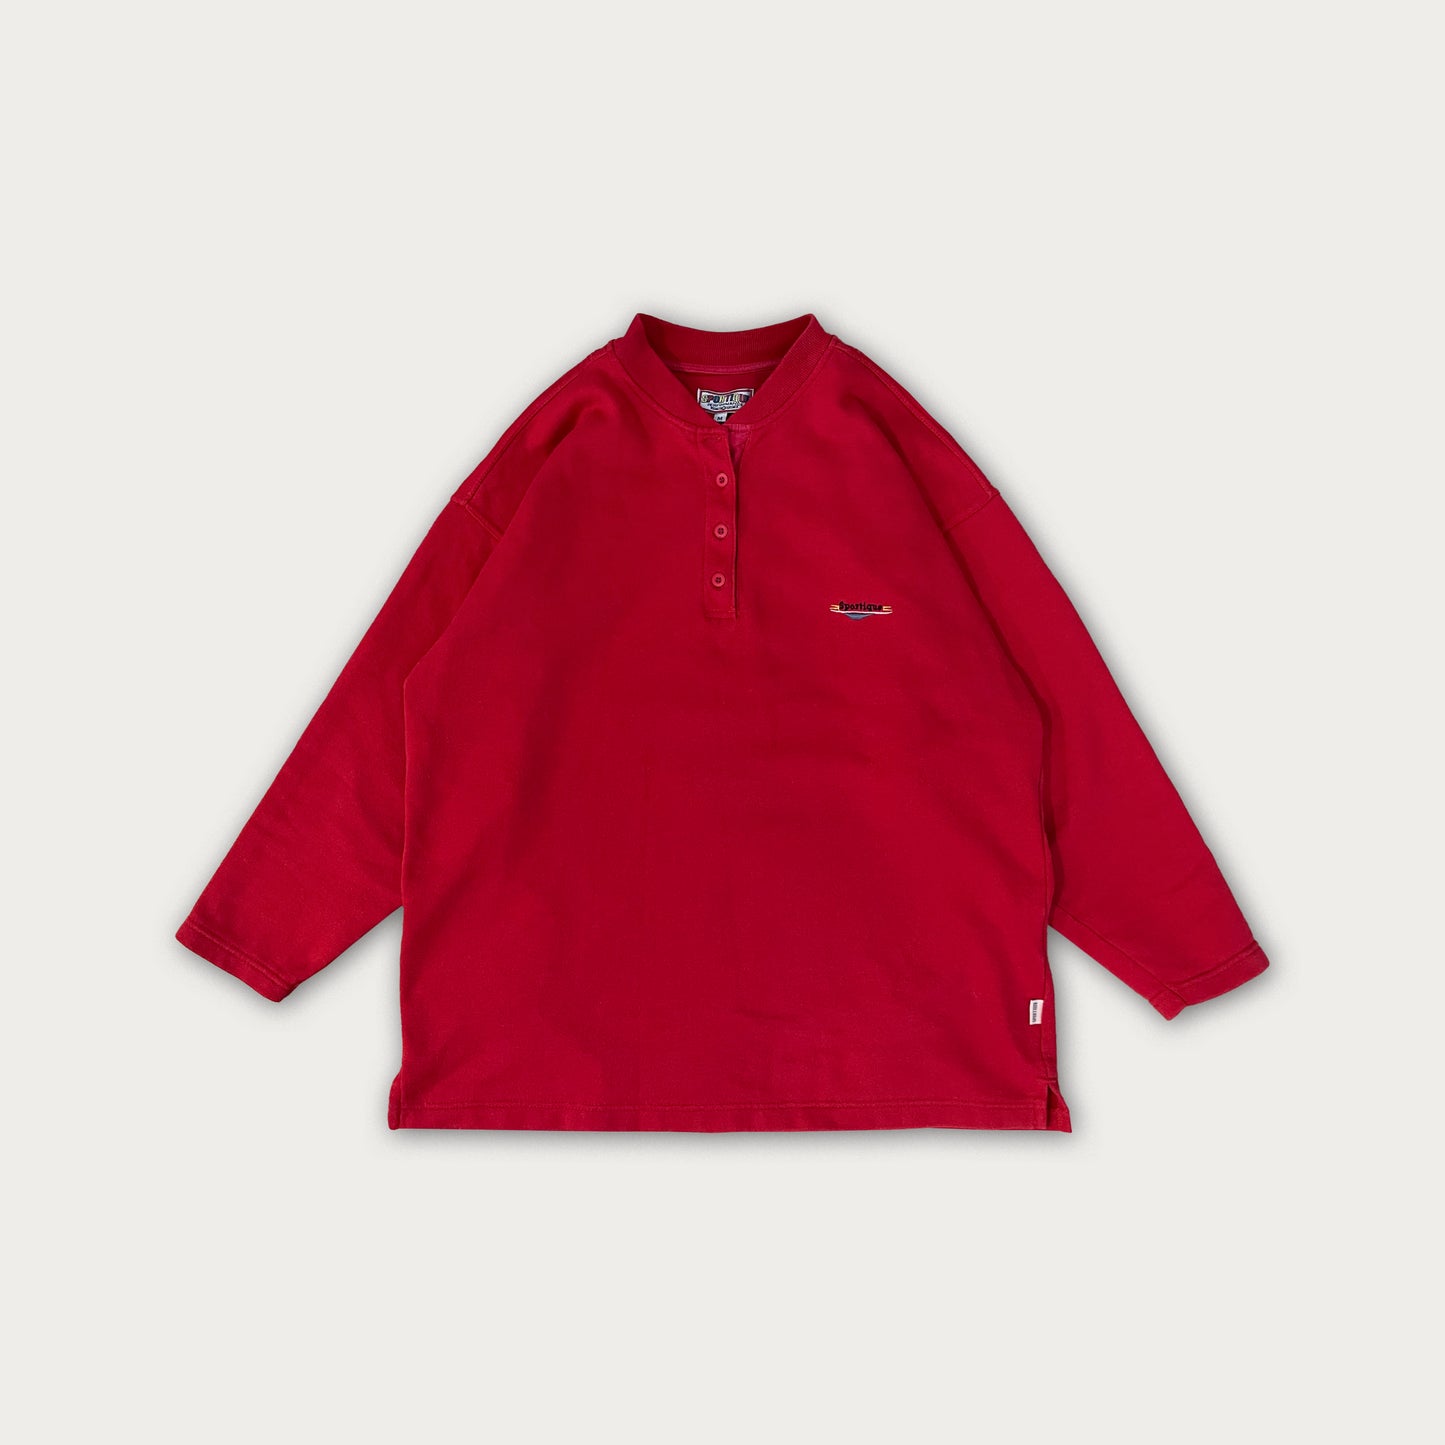 90s Red Sweatshirt